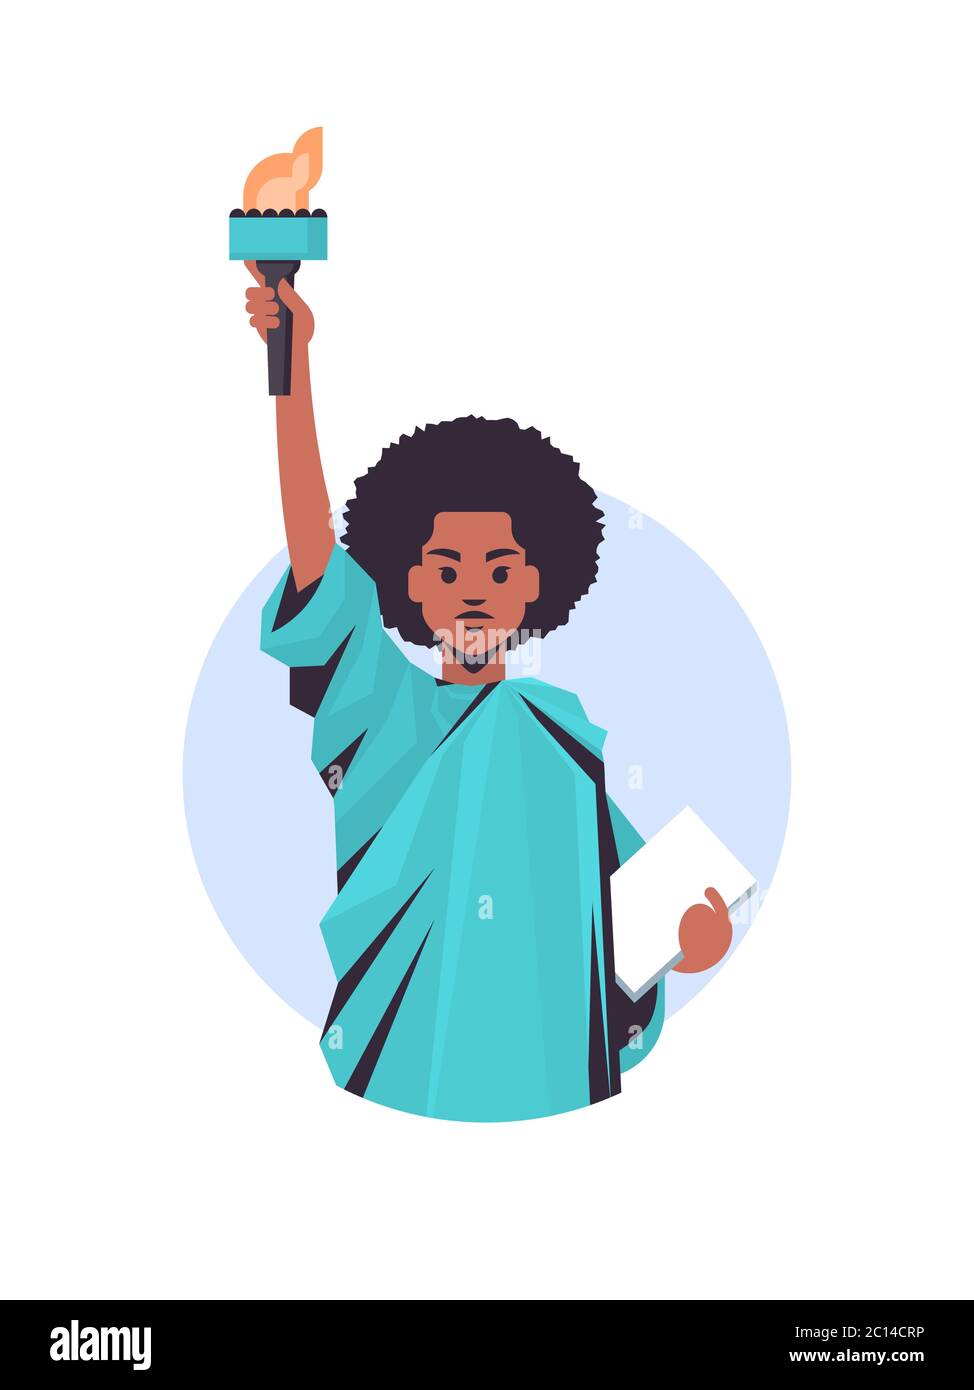 black lives matter african american libertà statua campagna di sensibilizzazione contro la discriminazione razziale di colore scuro supporto di pelle per pari diritti di nero persone illustrazione vettoriale verticale. Illustrazione Vettoriale